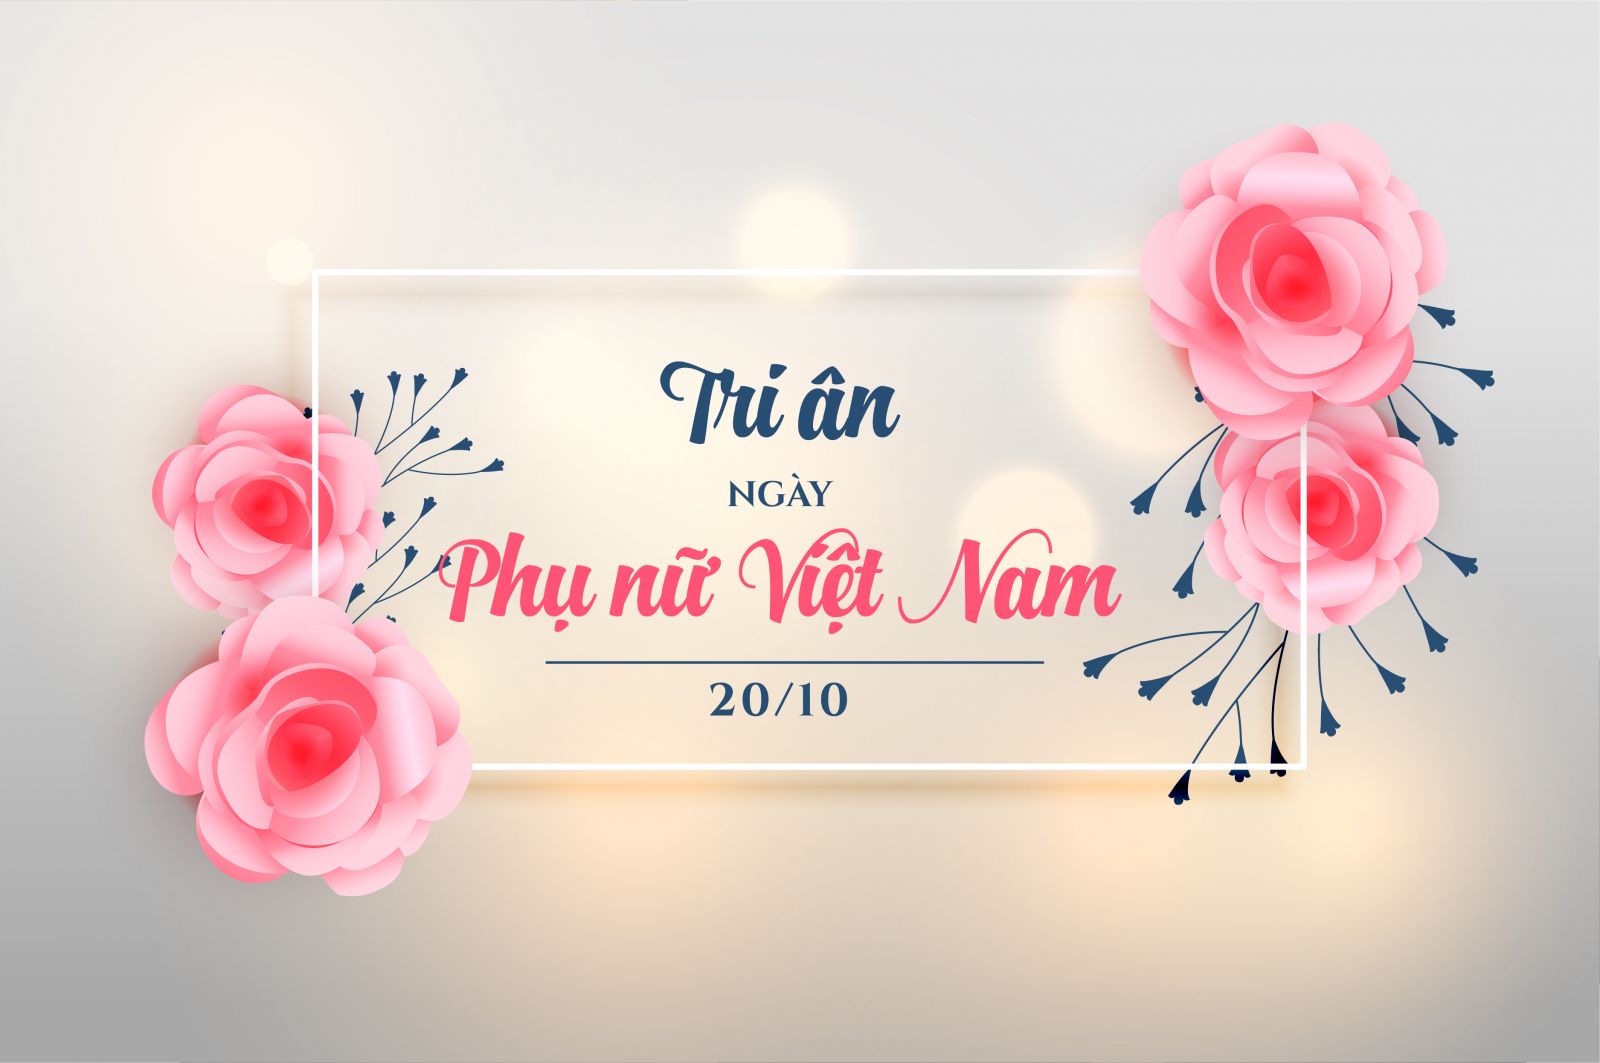 Spectra Baby Vietnam cung cấp các sản phẩm cho mẹ và bé chất lượng cao, an toàn và tiện lợi. Hãy xem hình ảnh để biết thêm về các sản phẩm mới nhất của Spectra Baby Vietnam.